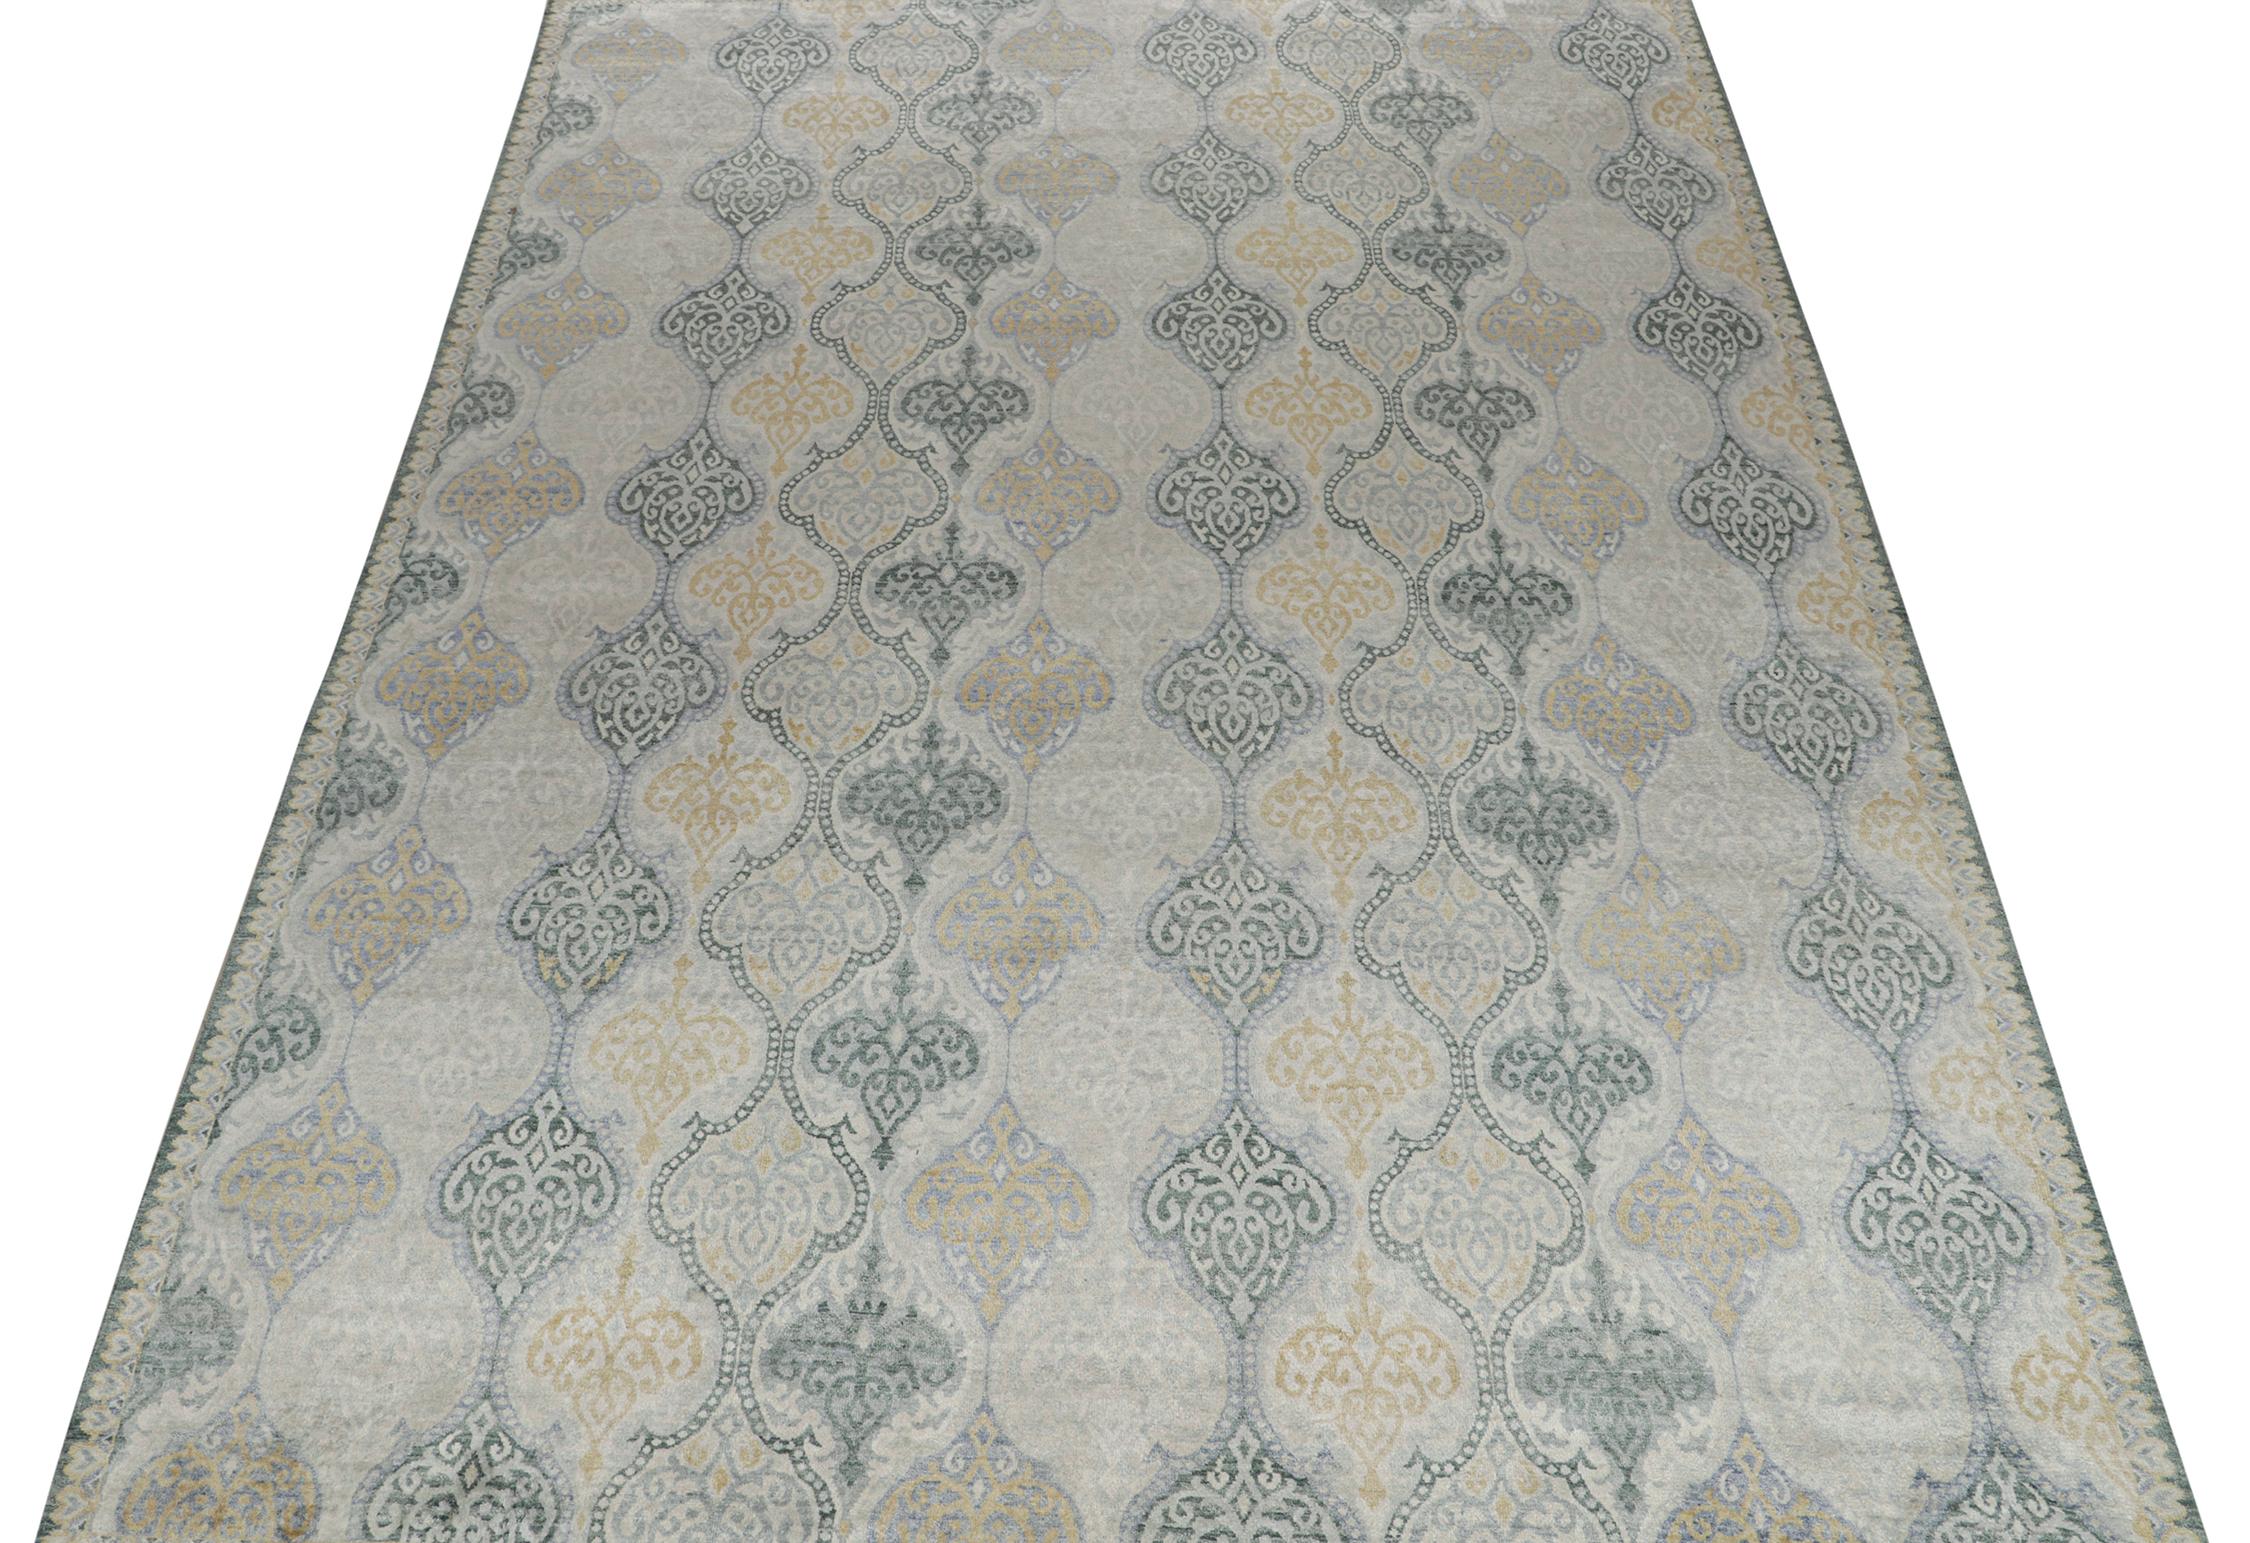 Un tapis 9x12 inspiré des styles de tapis traditionnels, de la collection Modern Classics de Rug & Kilim. Noué à la main en laine, jouant sur une confluence de motifs floraux gris, beige, bleu et or avec une grâce classique.
Plus loin dans la